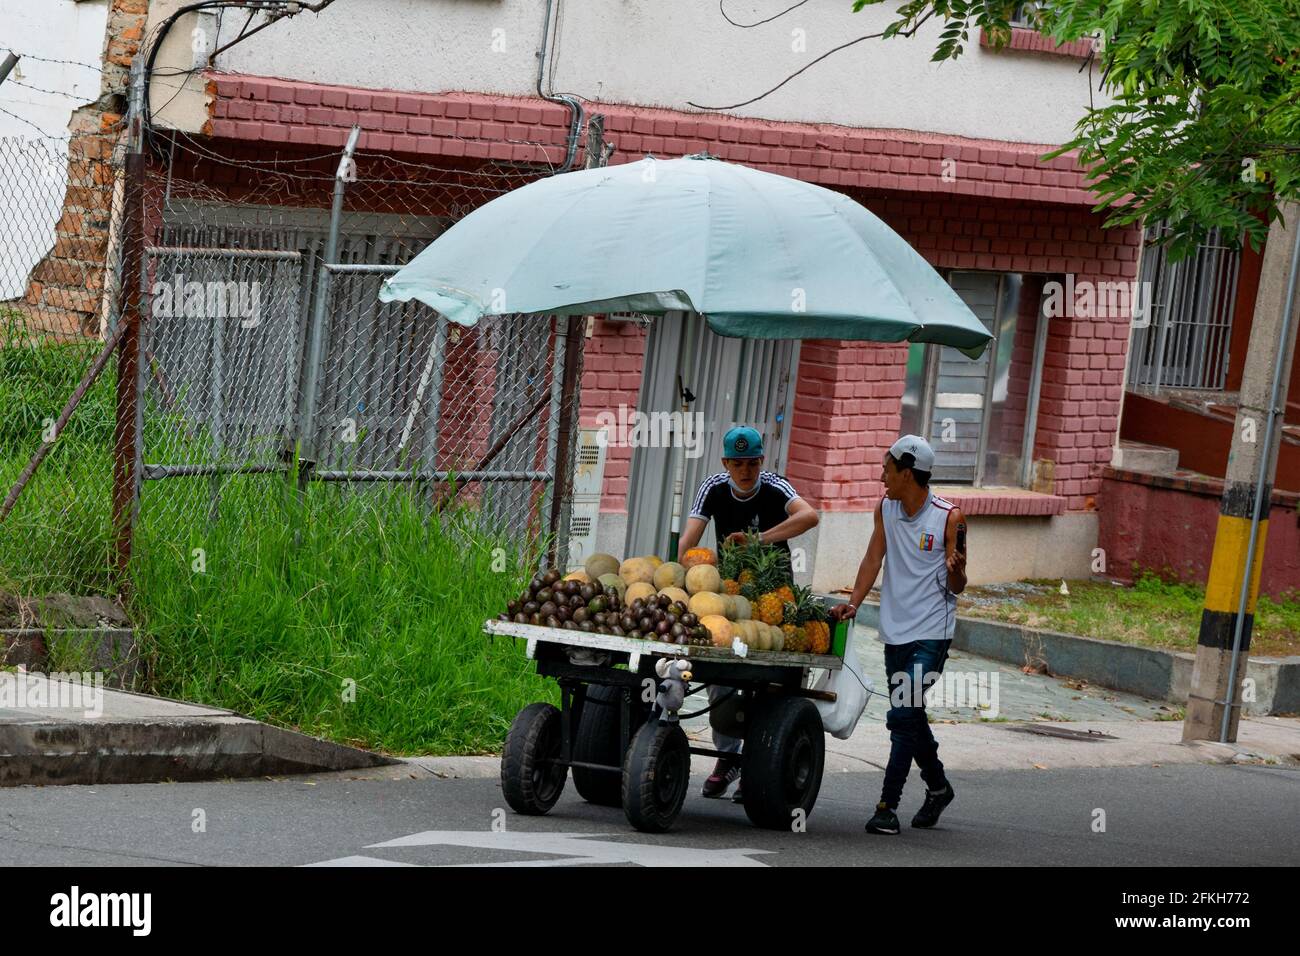 Medellin, Kolumbien - März 28 2021: Junge Männer, die Avocados, Ananas und Melone in einem Regenschirmwagen verkaufen Stockfoto